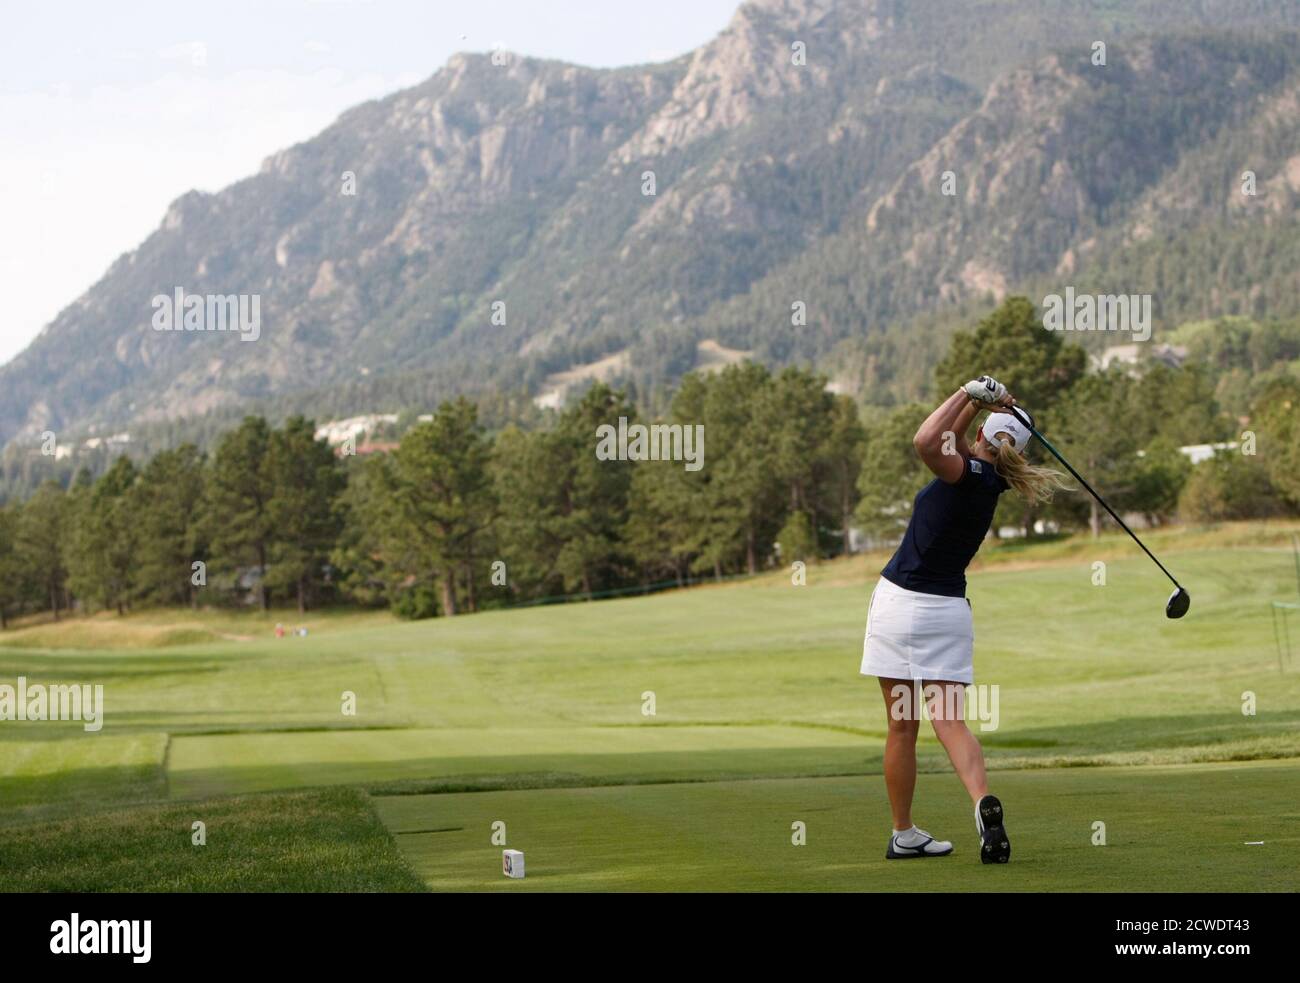 Morgan Pressel, de los EE.UU., se deshace del 11o tee en práctica para el torneo de golf abierto para mujeres de los EE.UU. En el Broadmoor en Colorado Springs, Colorado 6 de julio de 2011. El Abierto comienza el 7 de julio de 2011. REUTERS/Rick Wilking (ESTADOS UNIDOS - Tags: SPORT GOLF) Foto de stock